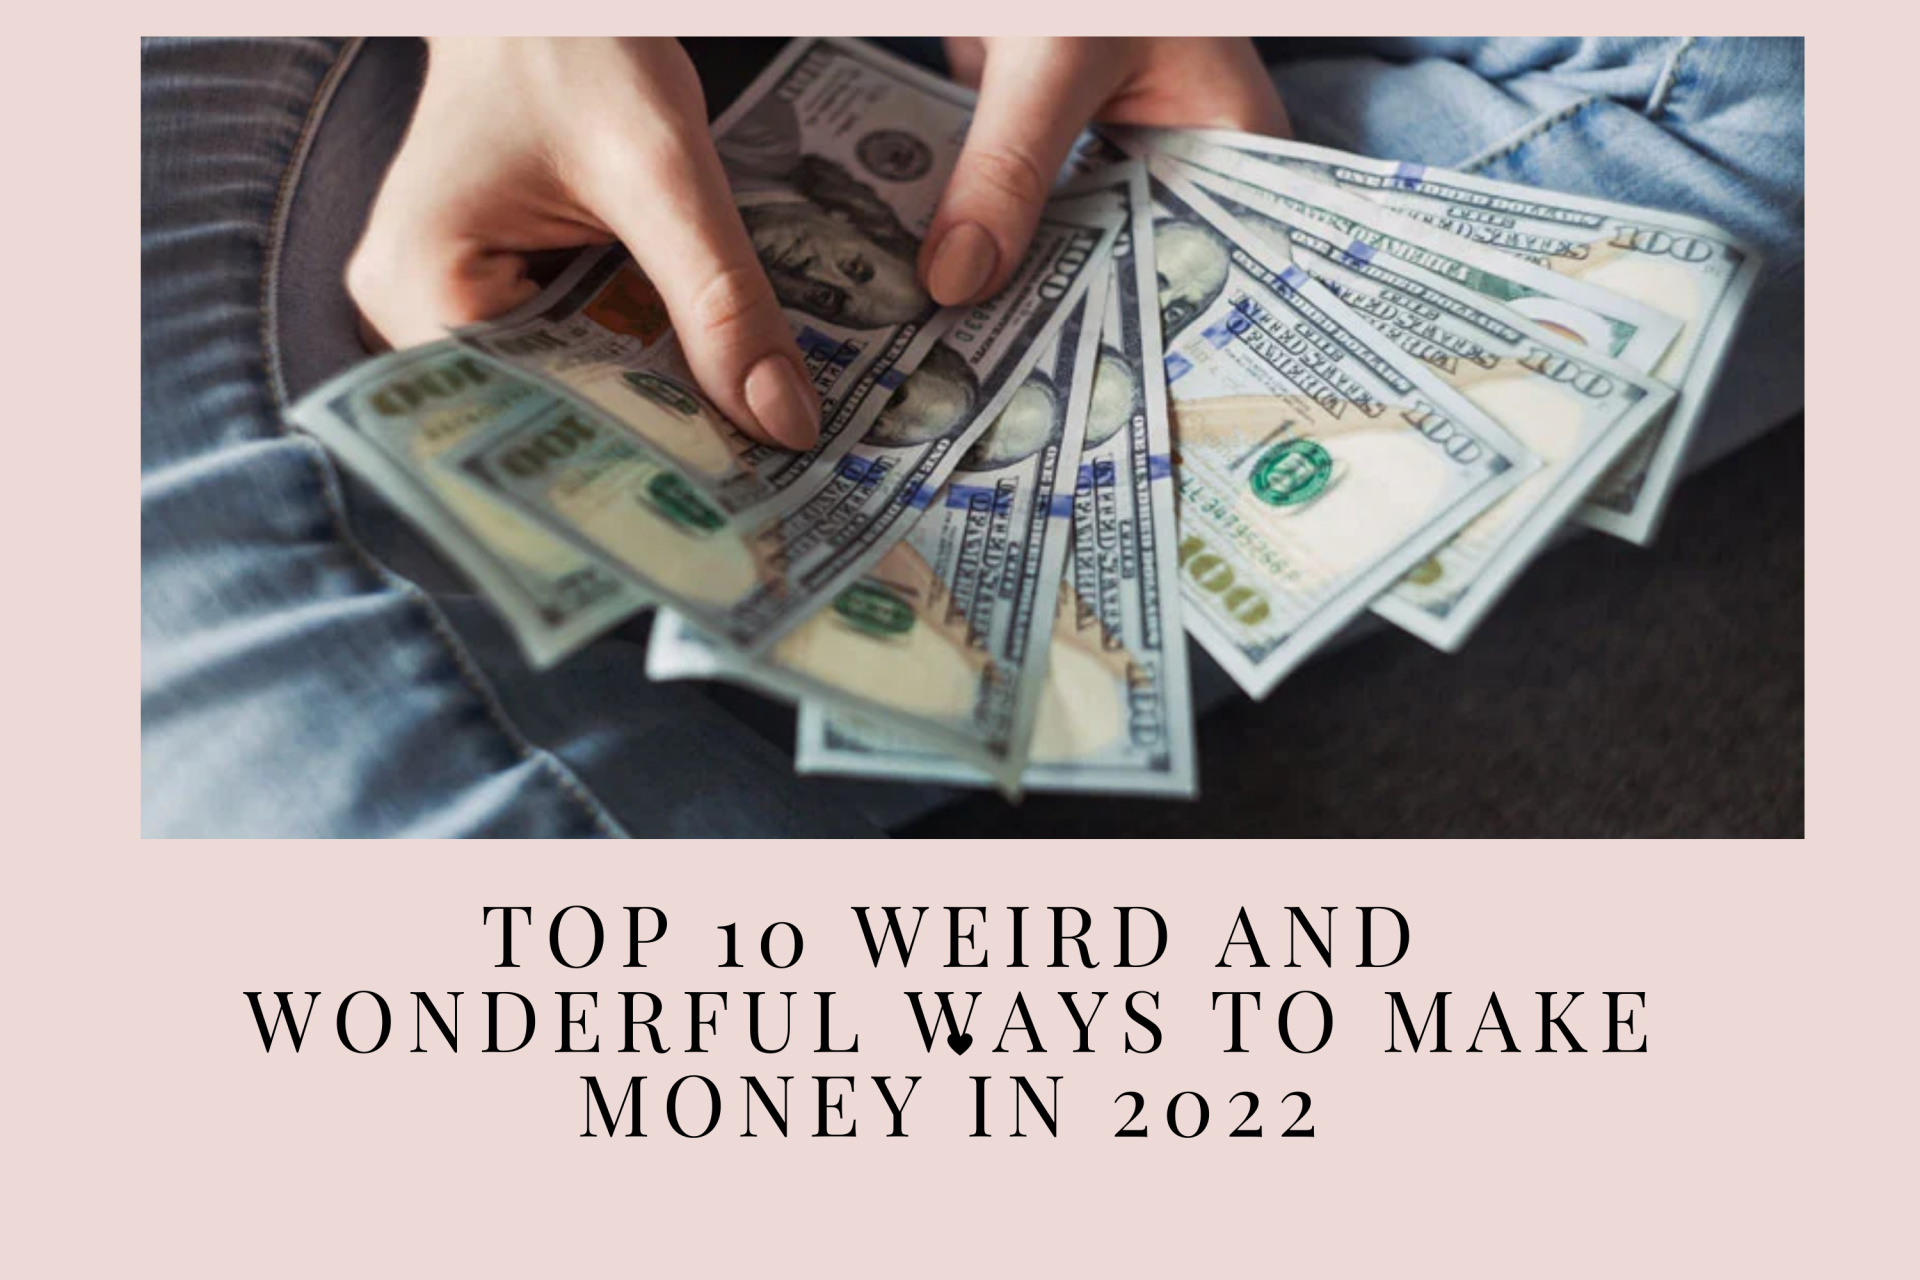 Top 10 Weird and Wonderful Ways to Make Money in 2021/2022